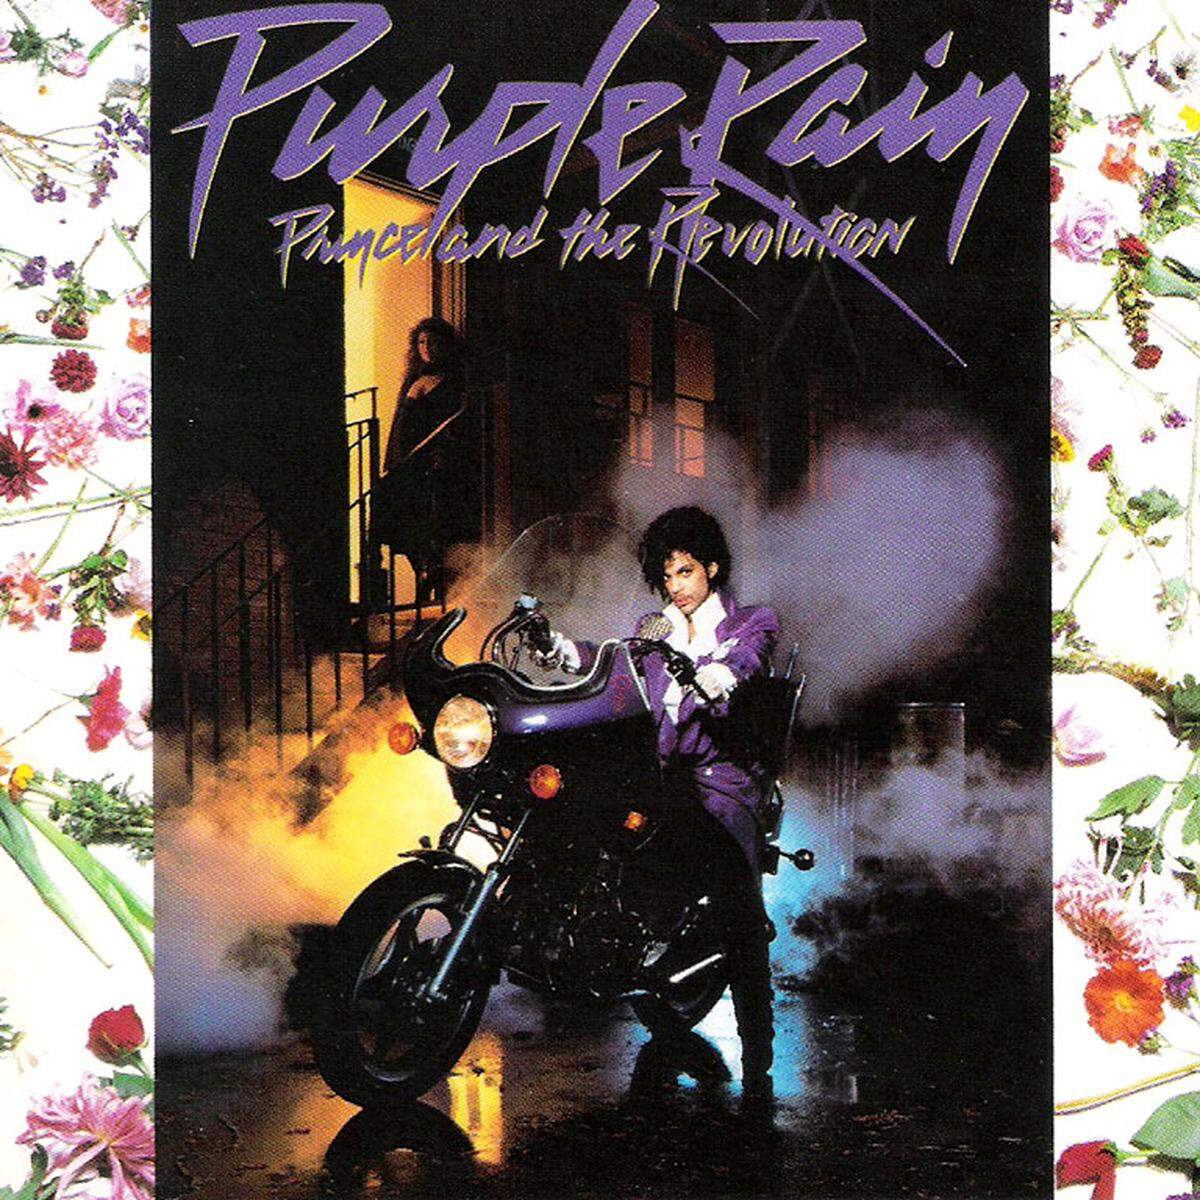 Wenn Michael Jackson der "King of Pop" war, so gebührte Prince in den 1980ern der Titel des Kaisers. 1984 veröffentlichte Prince Rogers Nelson mit "Purple Rain" ein nahezu perfektes Album.